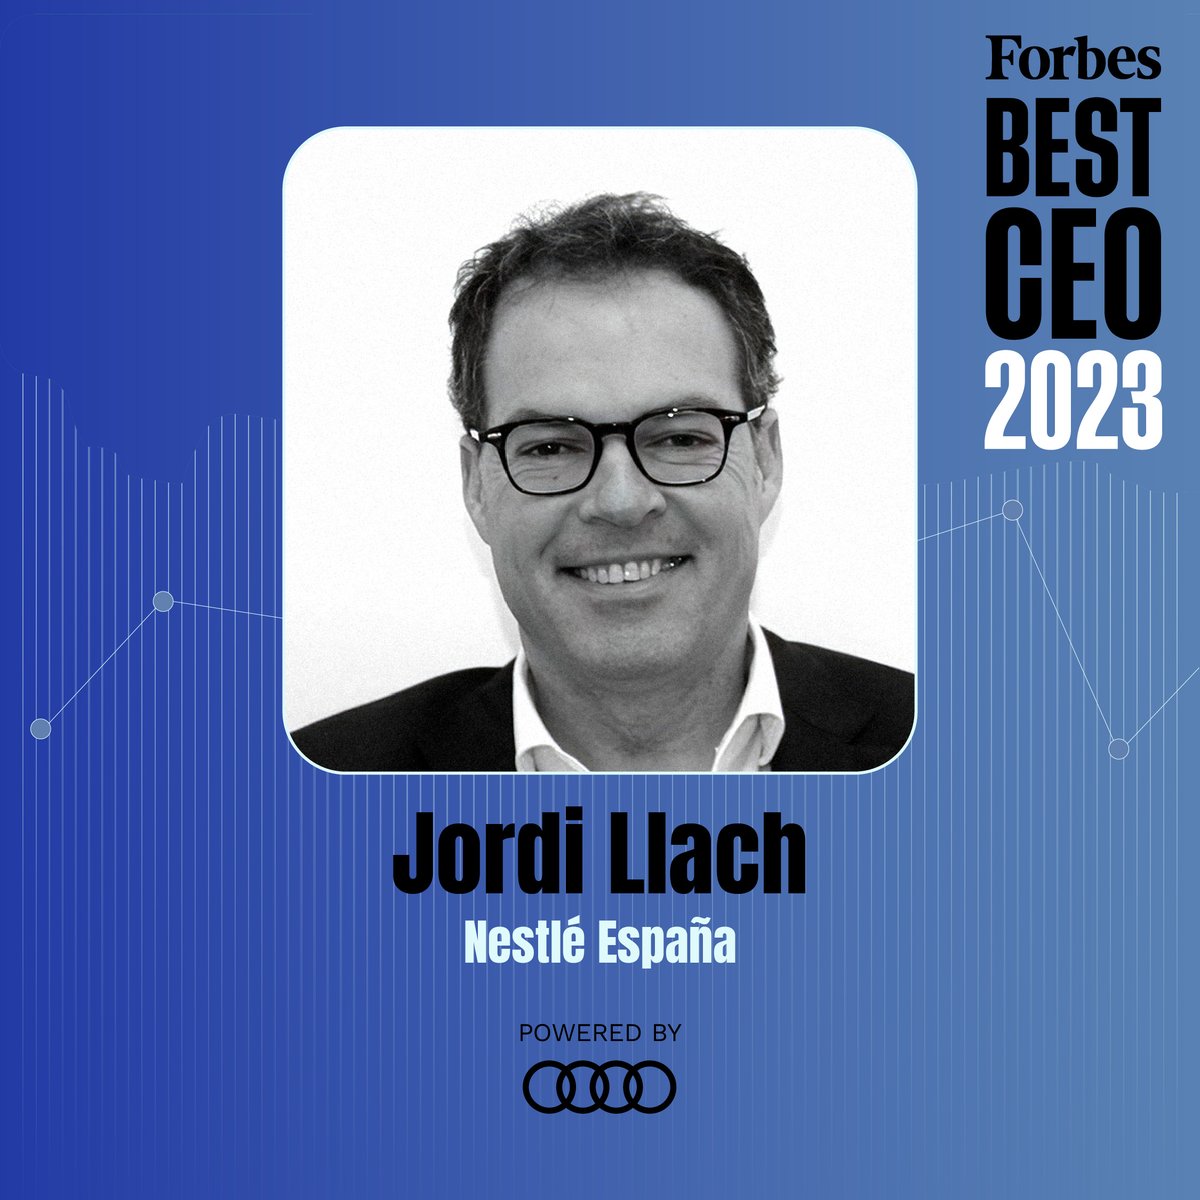 🏅 #ForbesBestCEO23 👤 Jordi Llach 💼 @Nestle_es Powered by @audispain forbes.es/los-100-mejore…